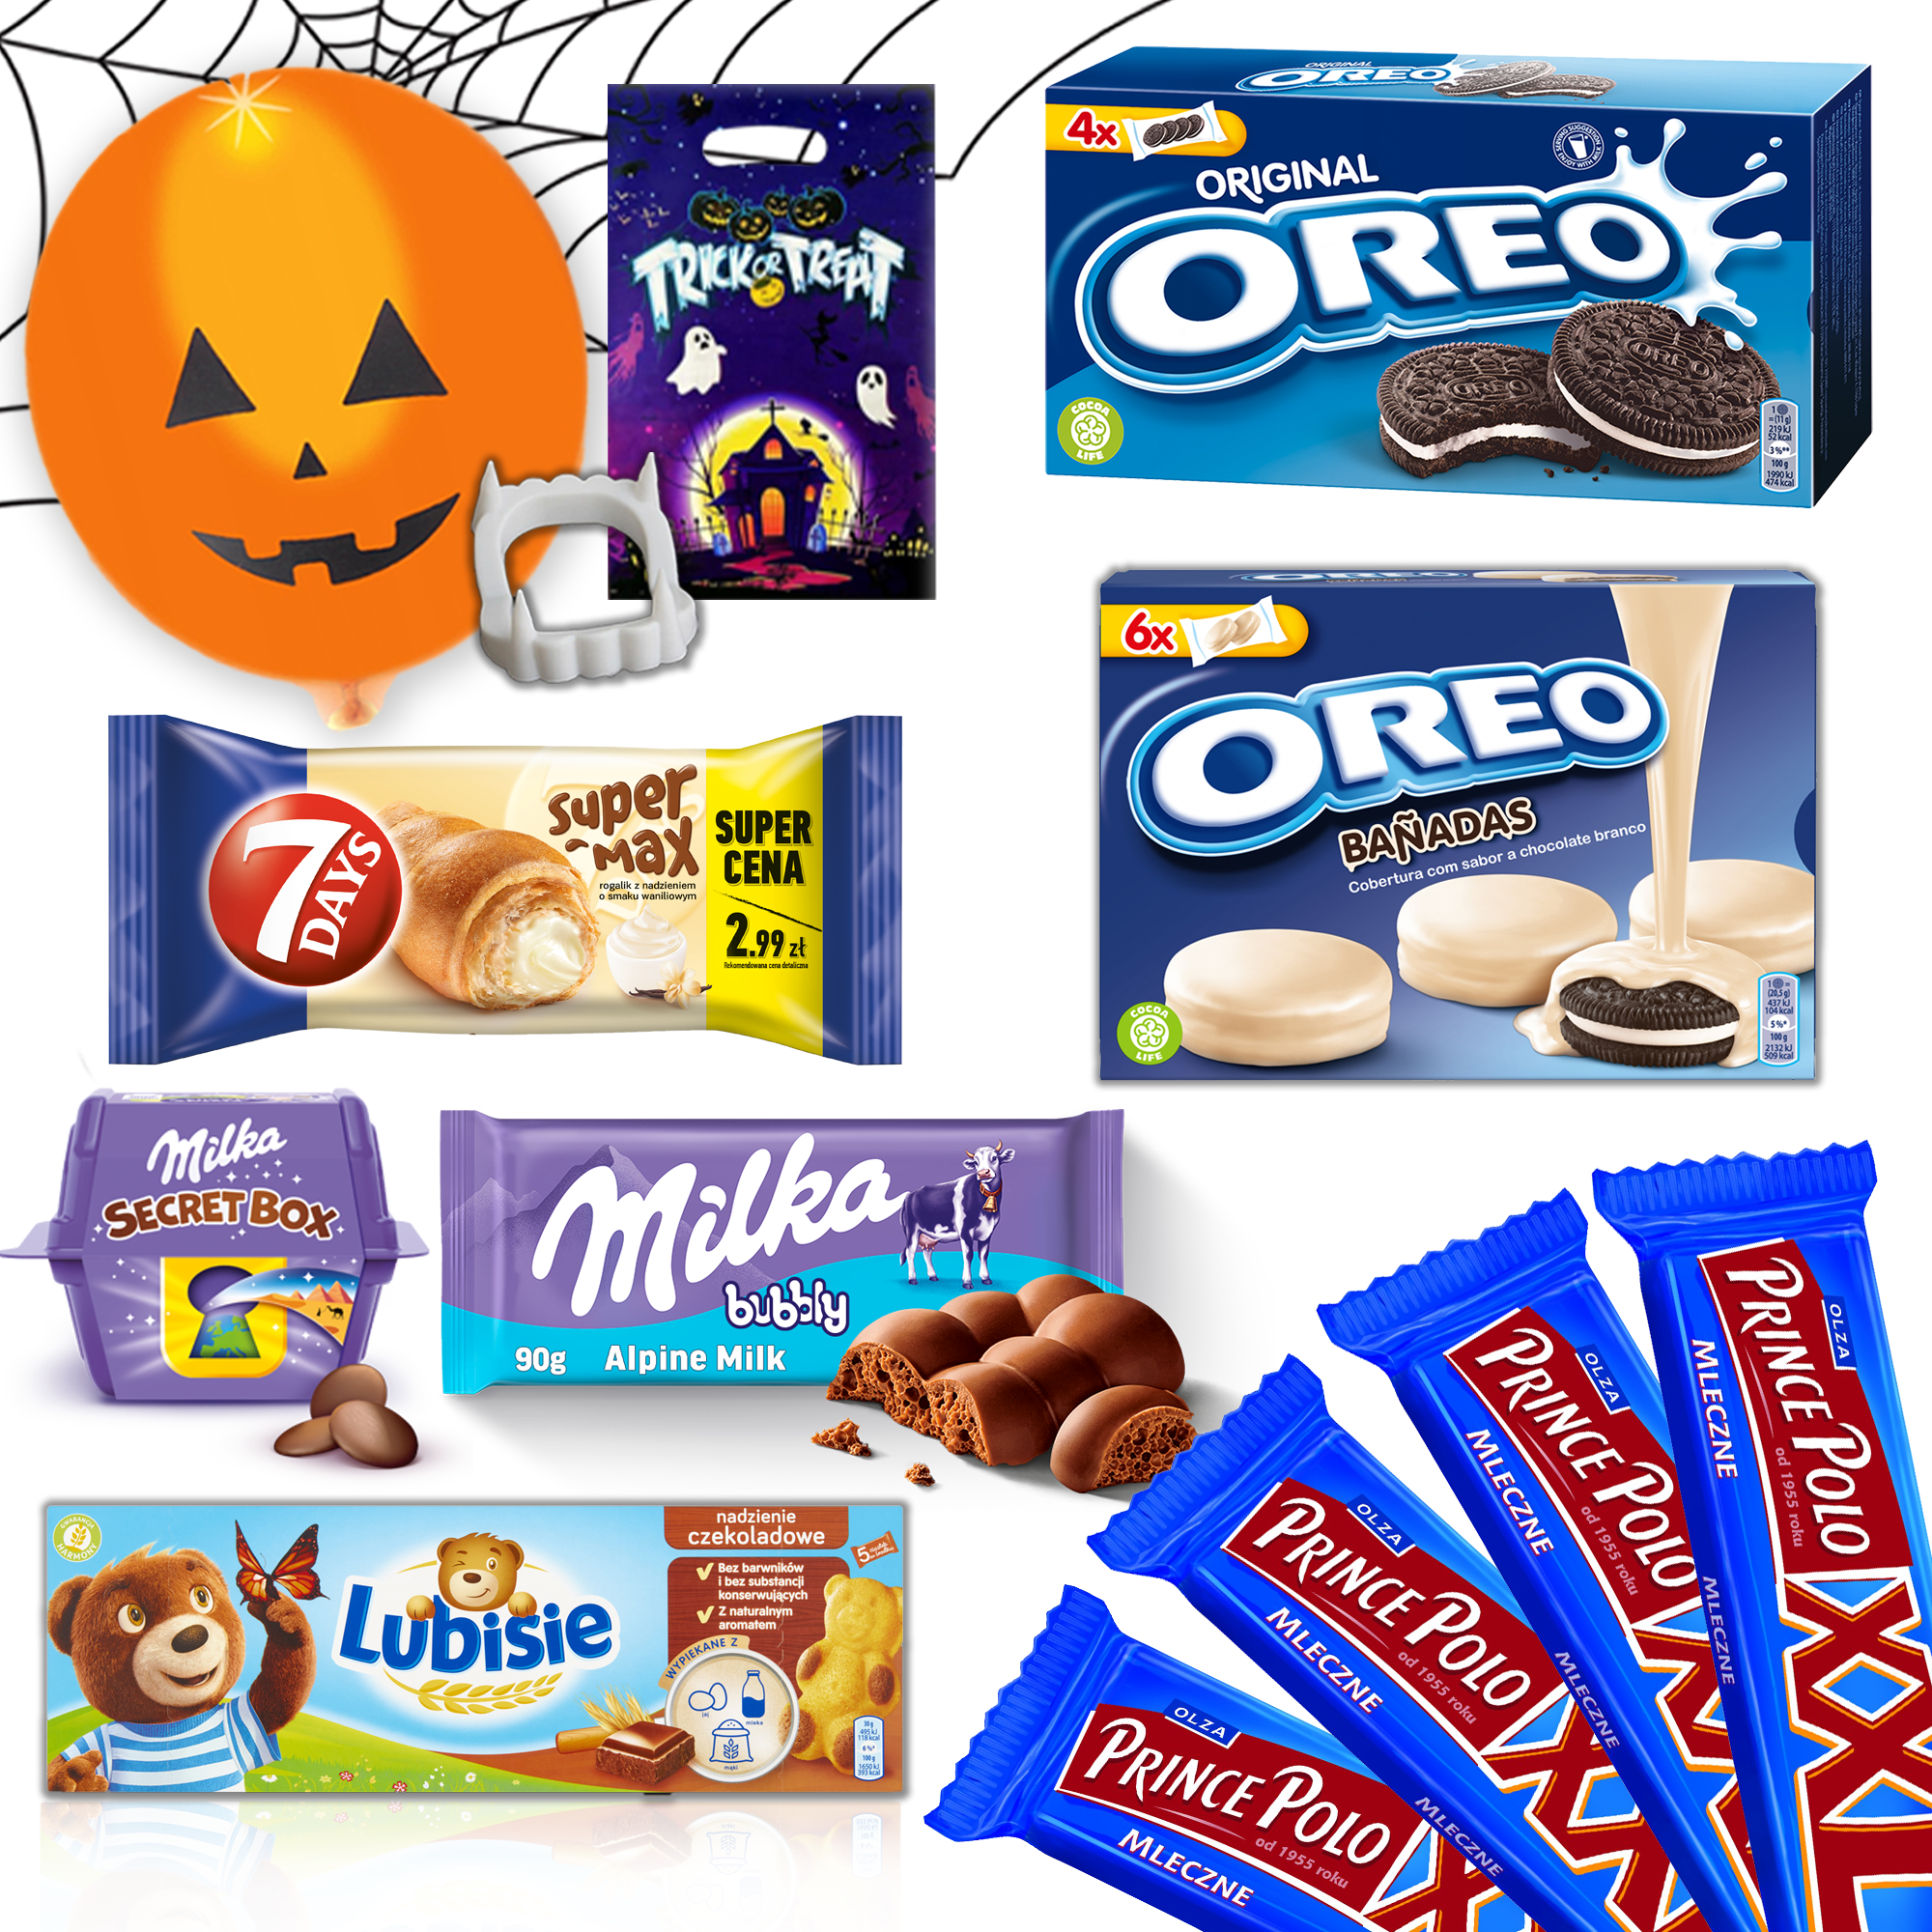 Zestaw słodyczy na Halloween, Milka, Oreo, 7Days, Prince Polo + gratisy